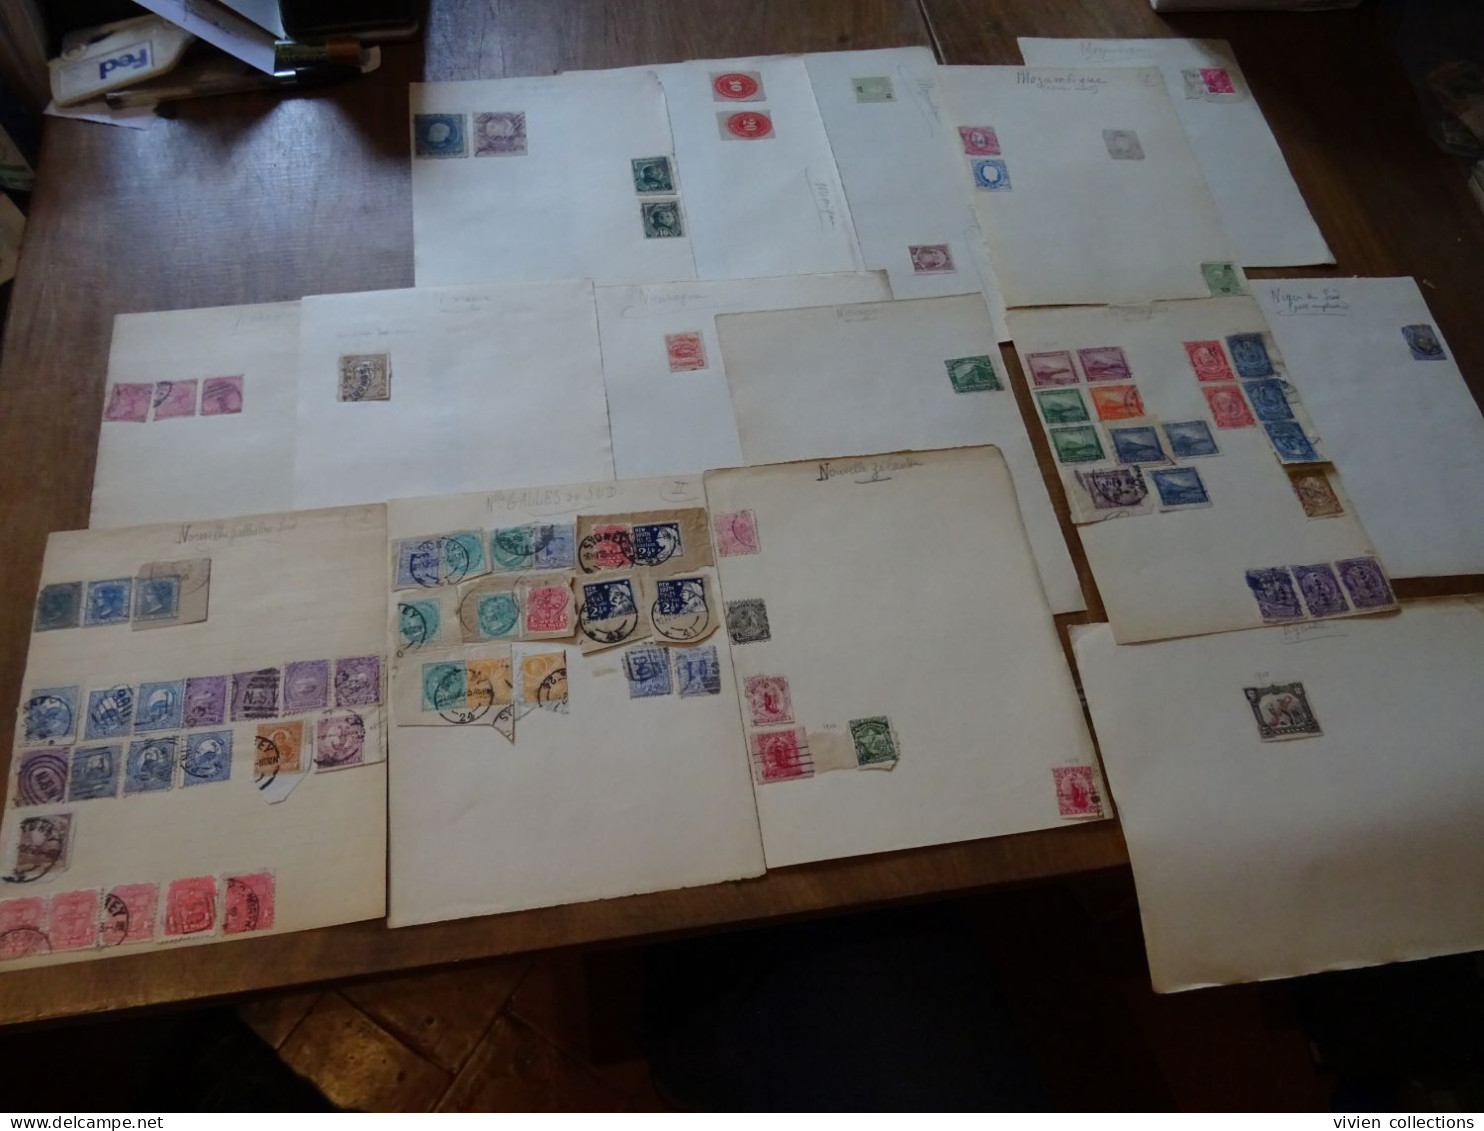 Collection d'époque a étudier Europe / Monde 3050 timbres + 200 des colonies françaises + documents et cachets de 14/18